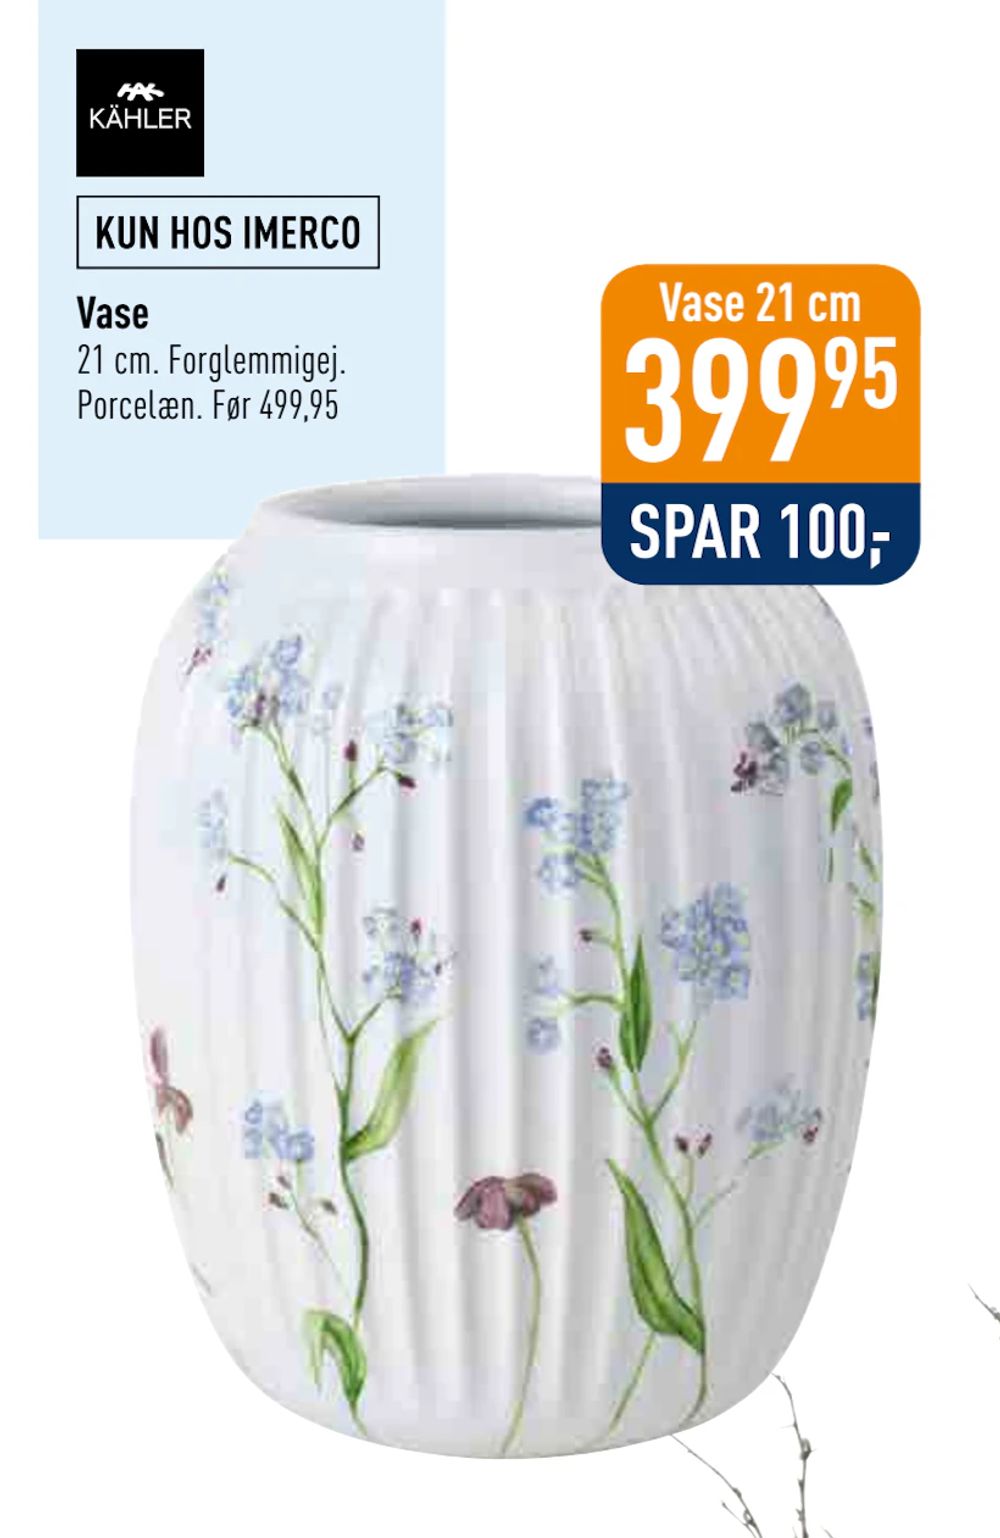 Tilbud på Vase fra Imerco til 399,95 kr.